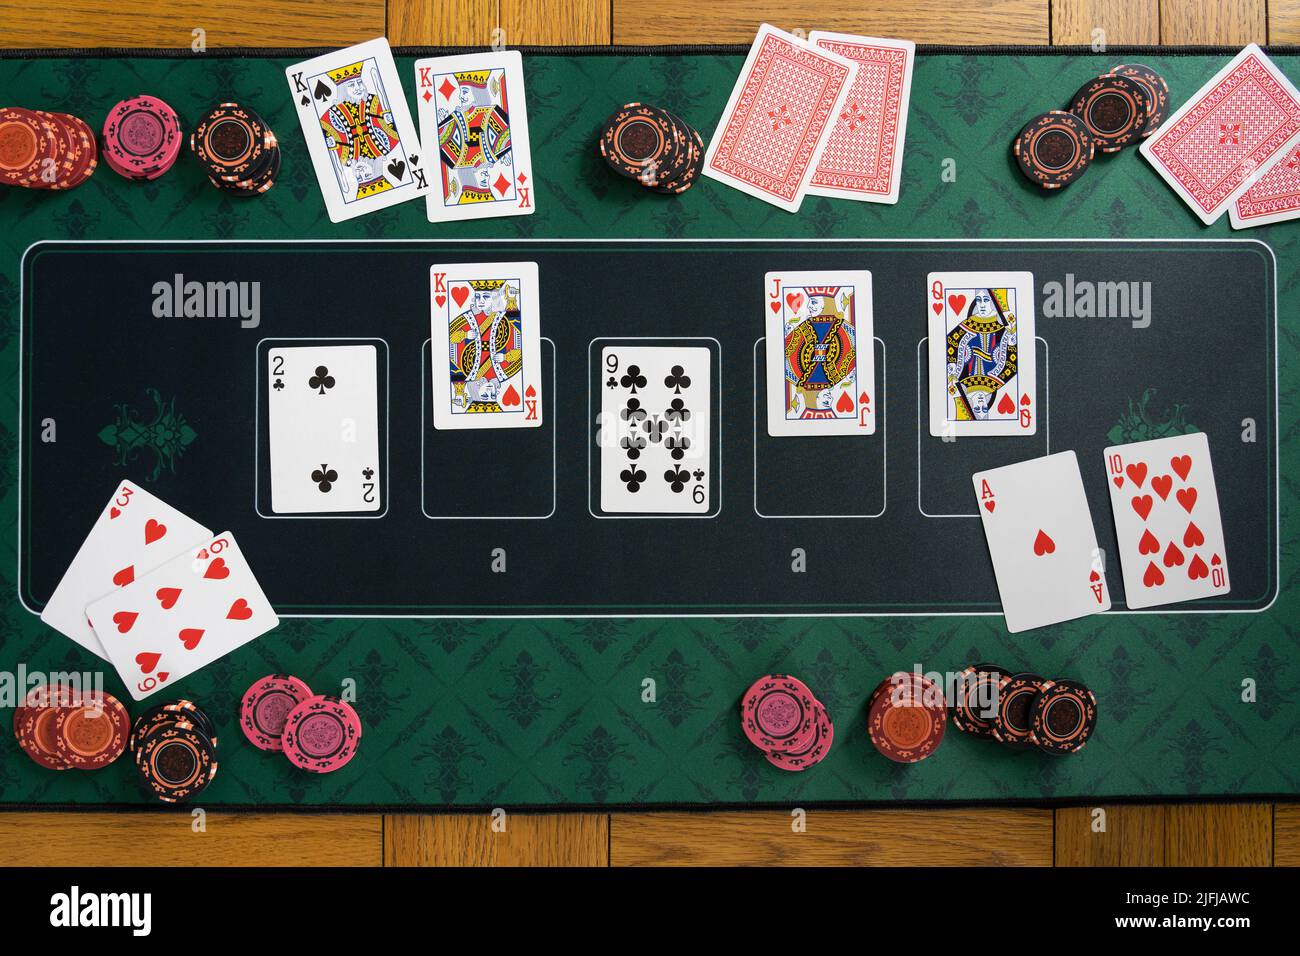 Regarder vers le bas sur une main de chasse royale droite gagnante sur un Texas Hold 'em de poker tapis de jeu avec des piles de jetons de jeu, des cartes de jeu et des mains pliées Banque D'Images